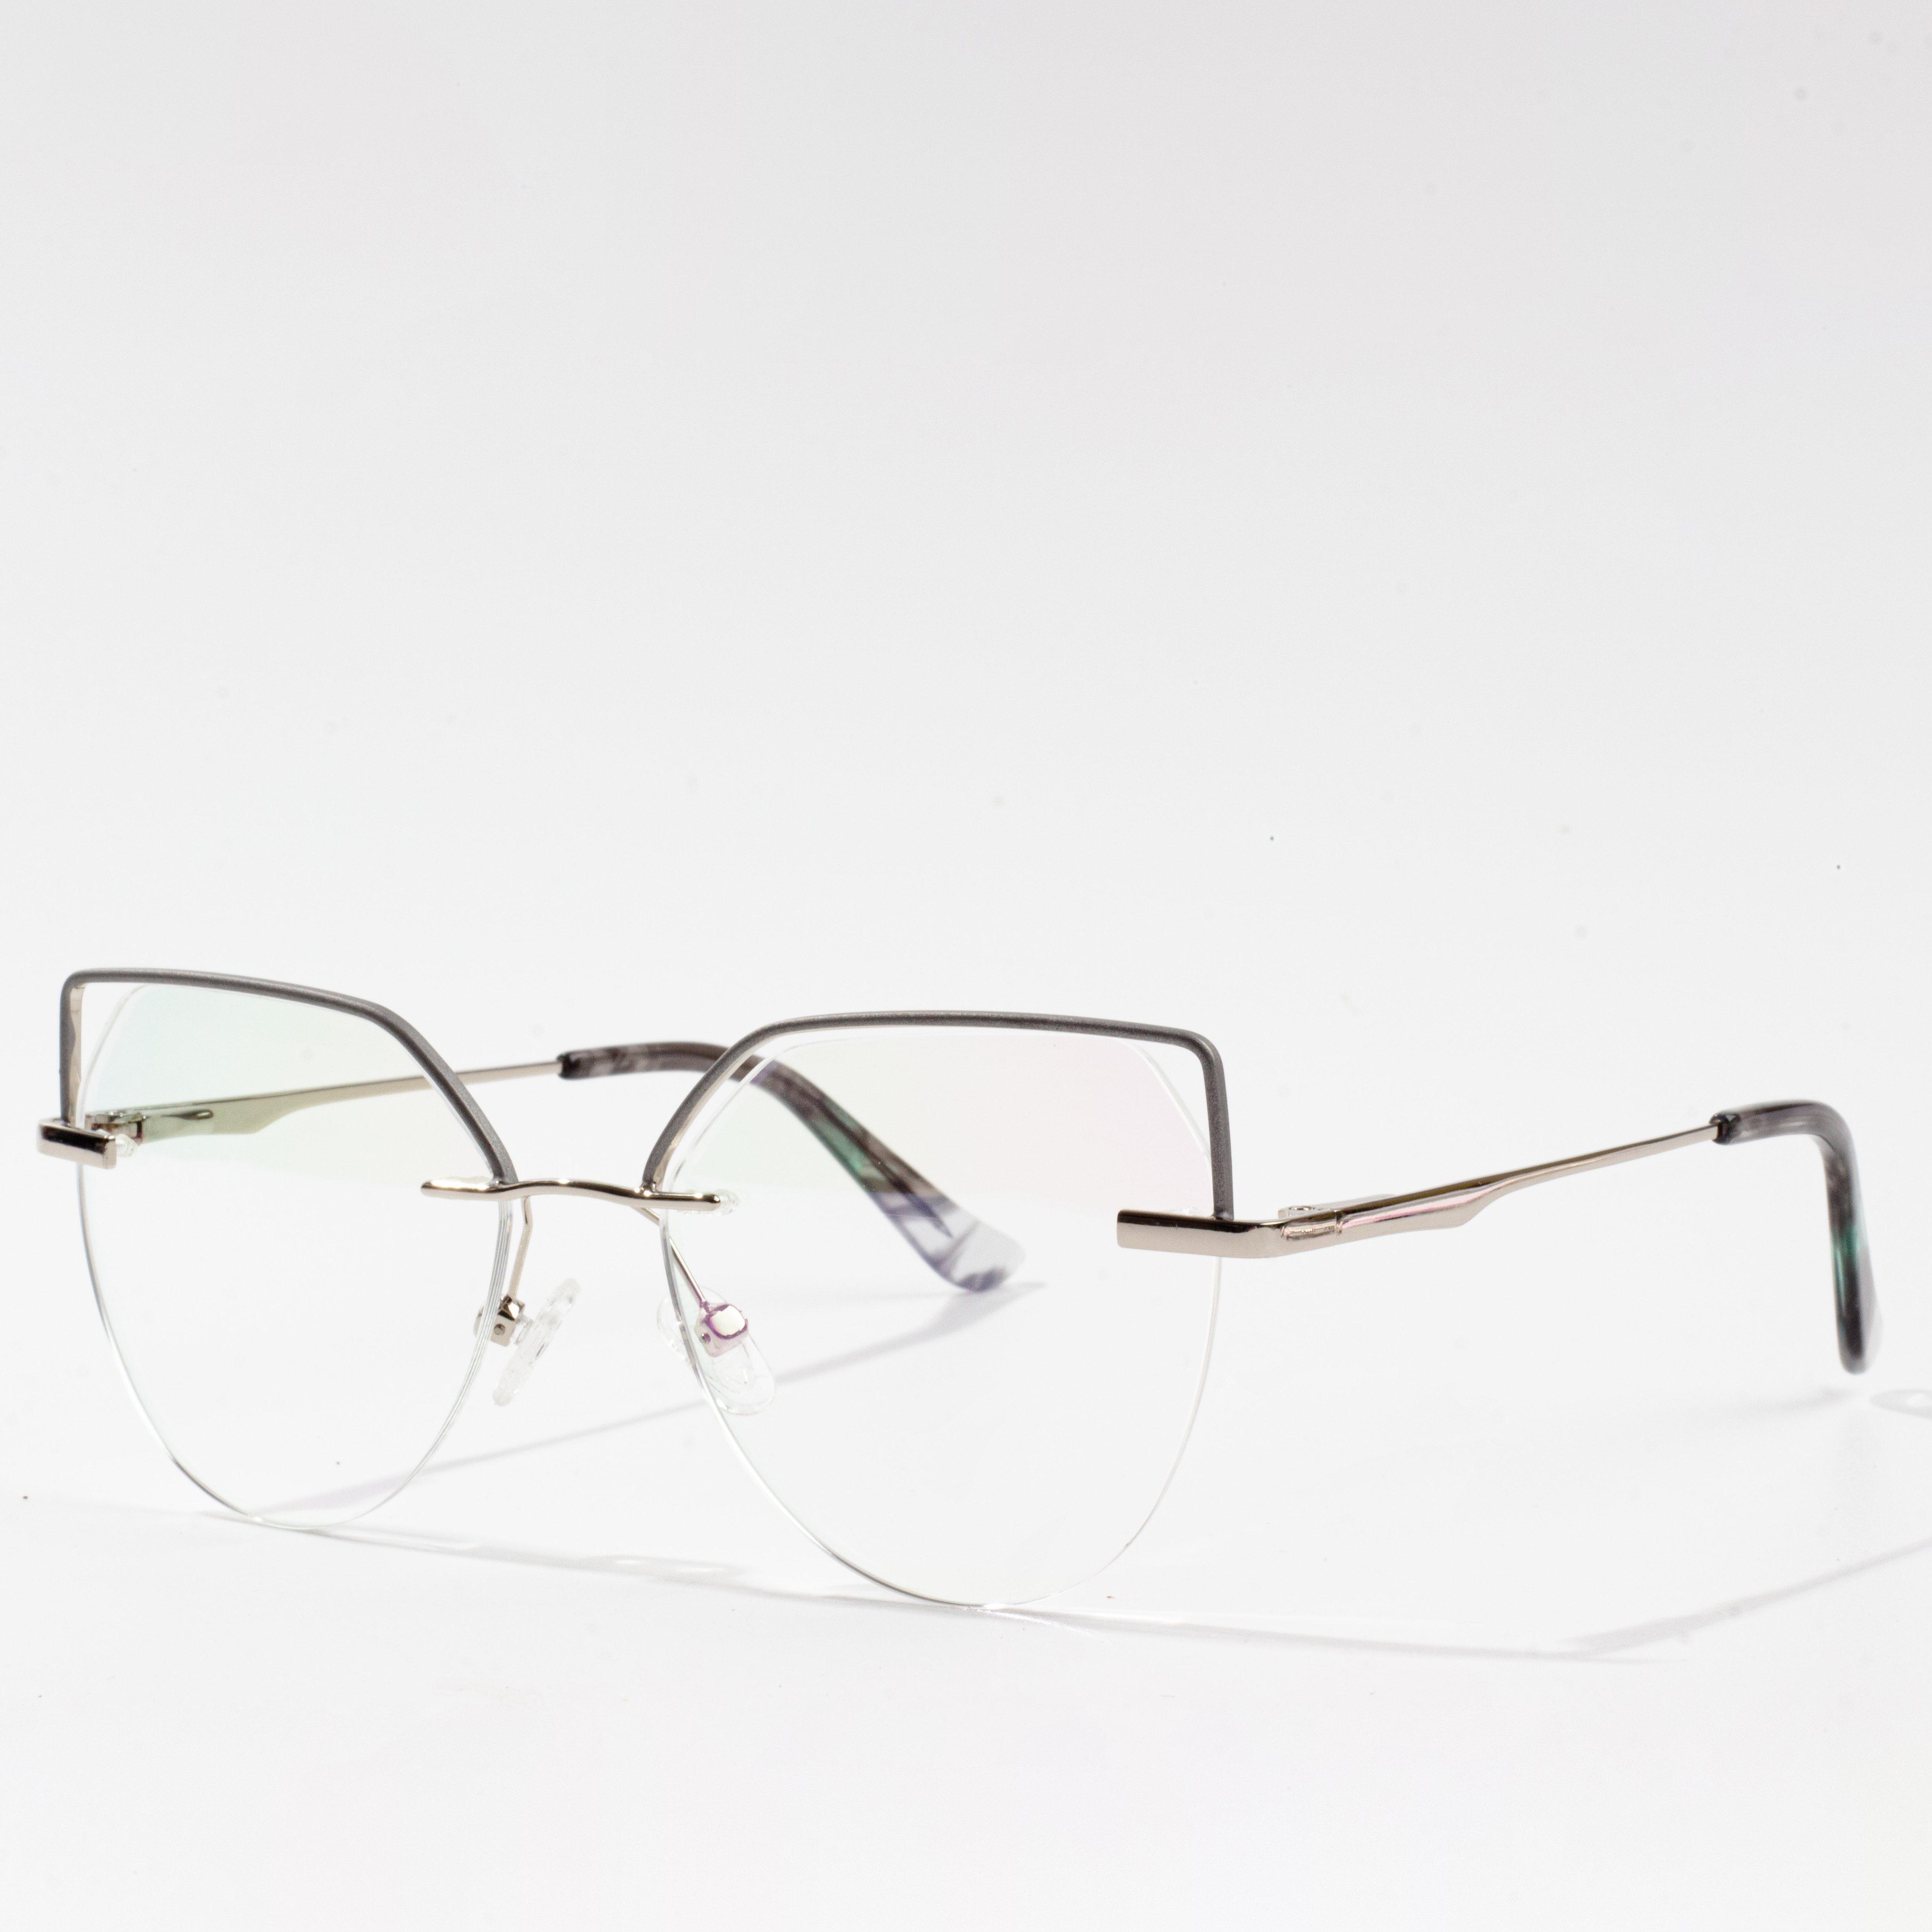 إطارات النظارات غير تقليدية